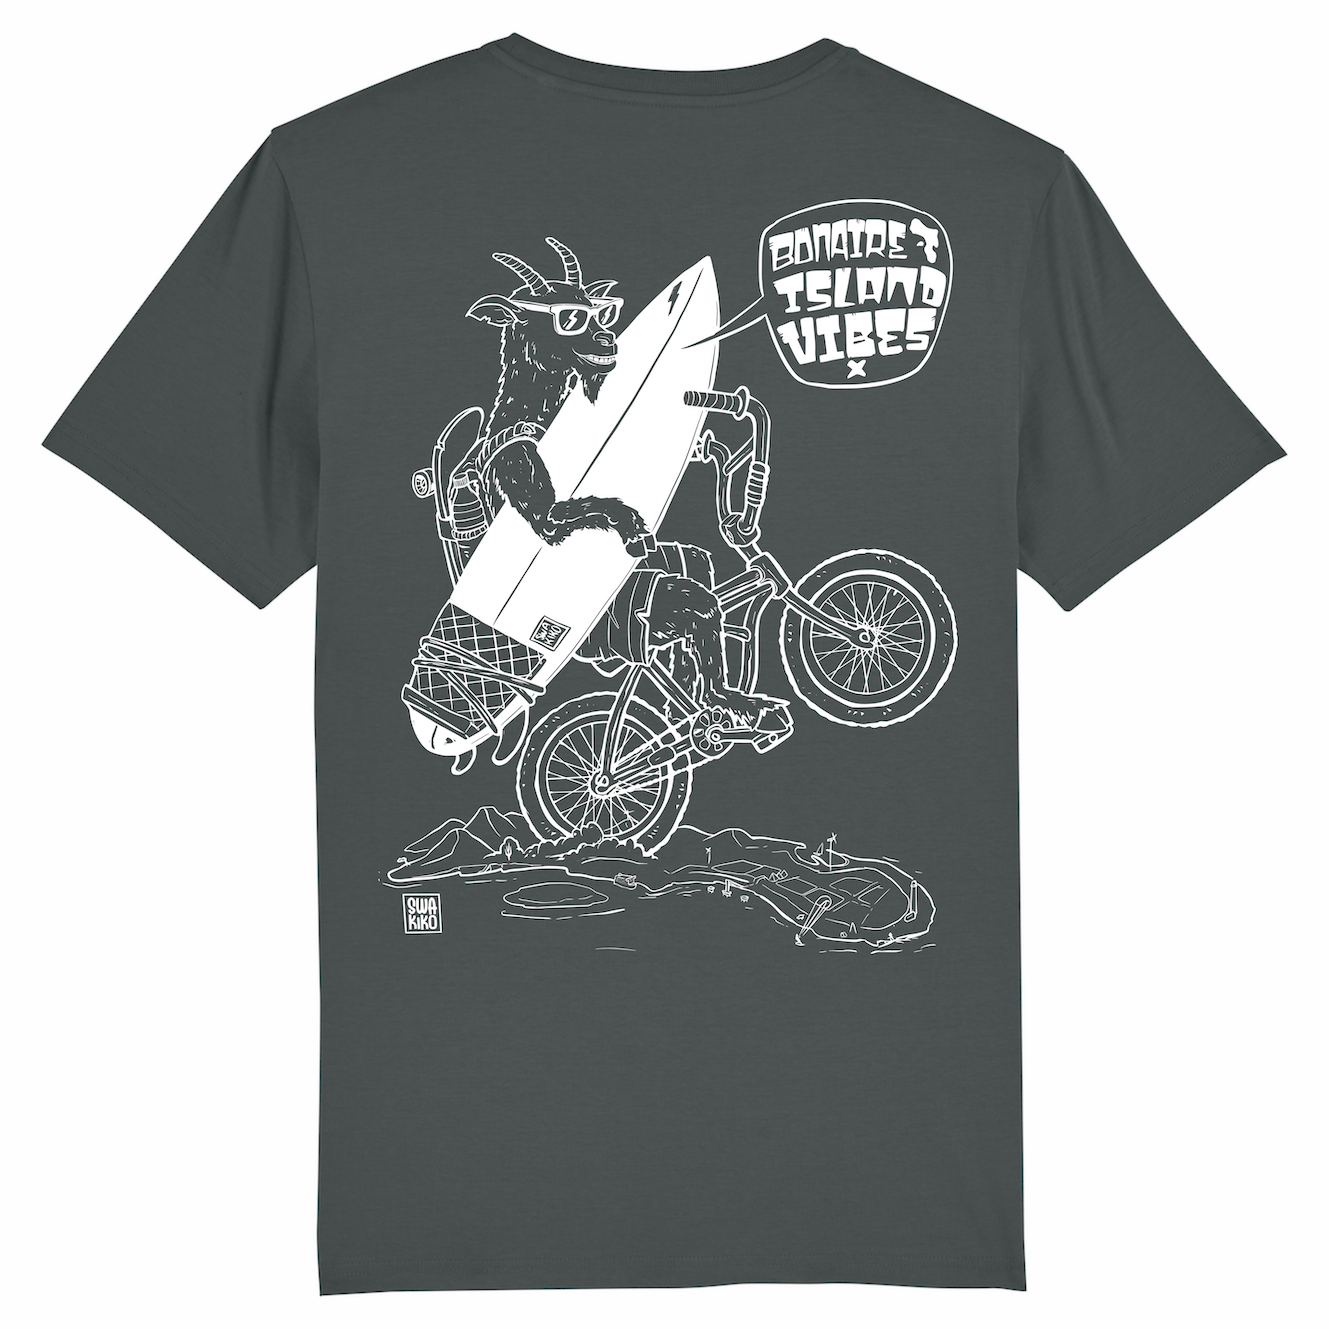 Antraciet T-shirt met wit design van een geit die op een wiel over Bonaire fietst met een surfboard in de hand en skateboard